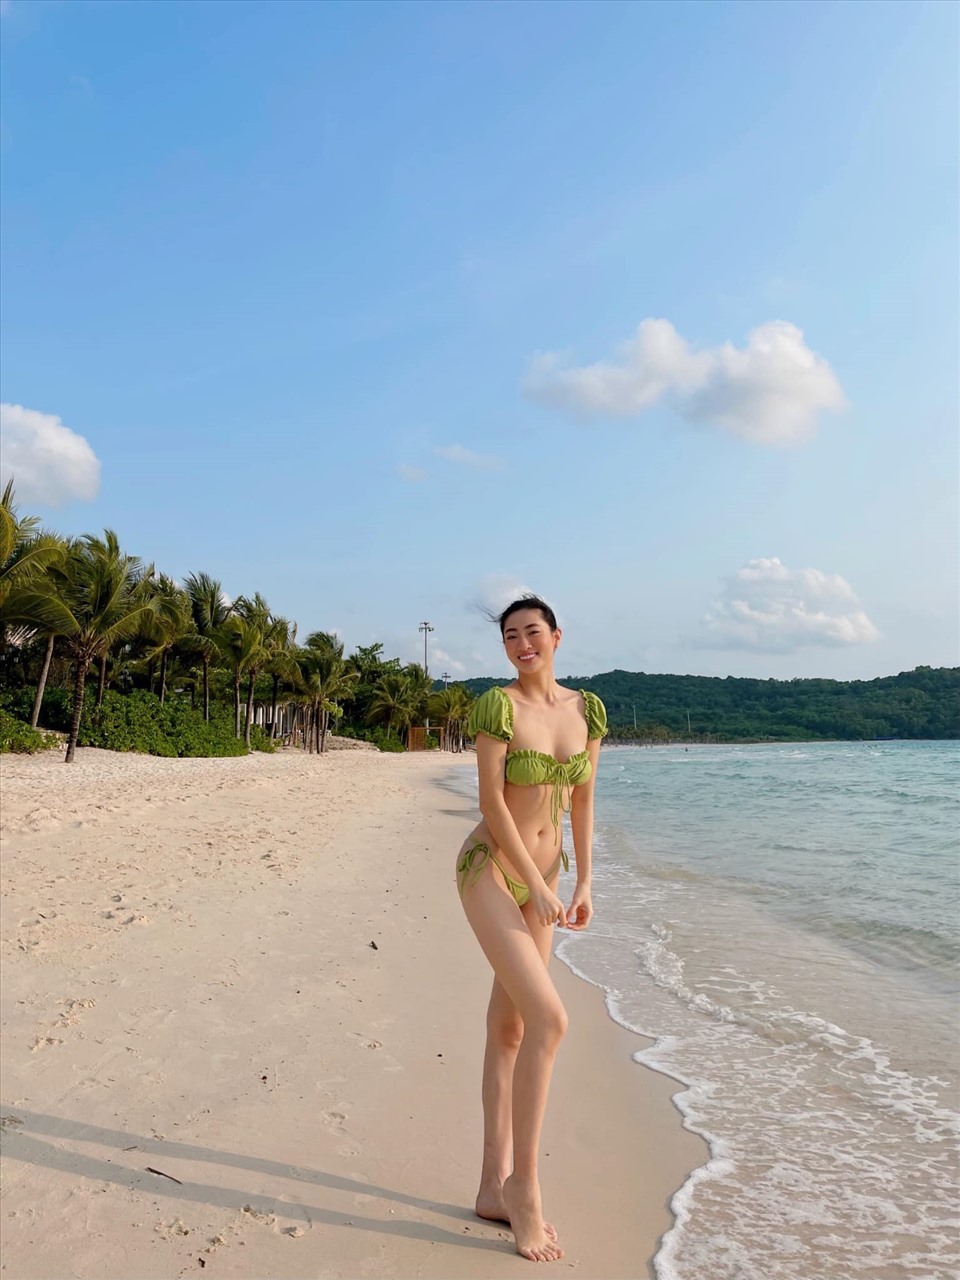 Sở hữu đôi chân dài nhất 1m22, Lương Thùy Linh luôn biết cách tận dụng khéo léo lợi thế khi liên tục xuất hiện với những hình ảnh thời trang tôn dáng hay những bộ bikini quyến rũ. Ảnh: NVCC.